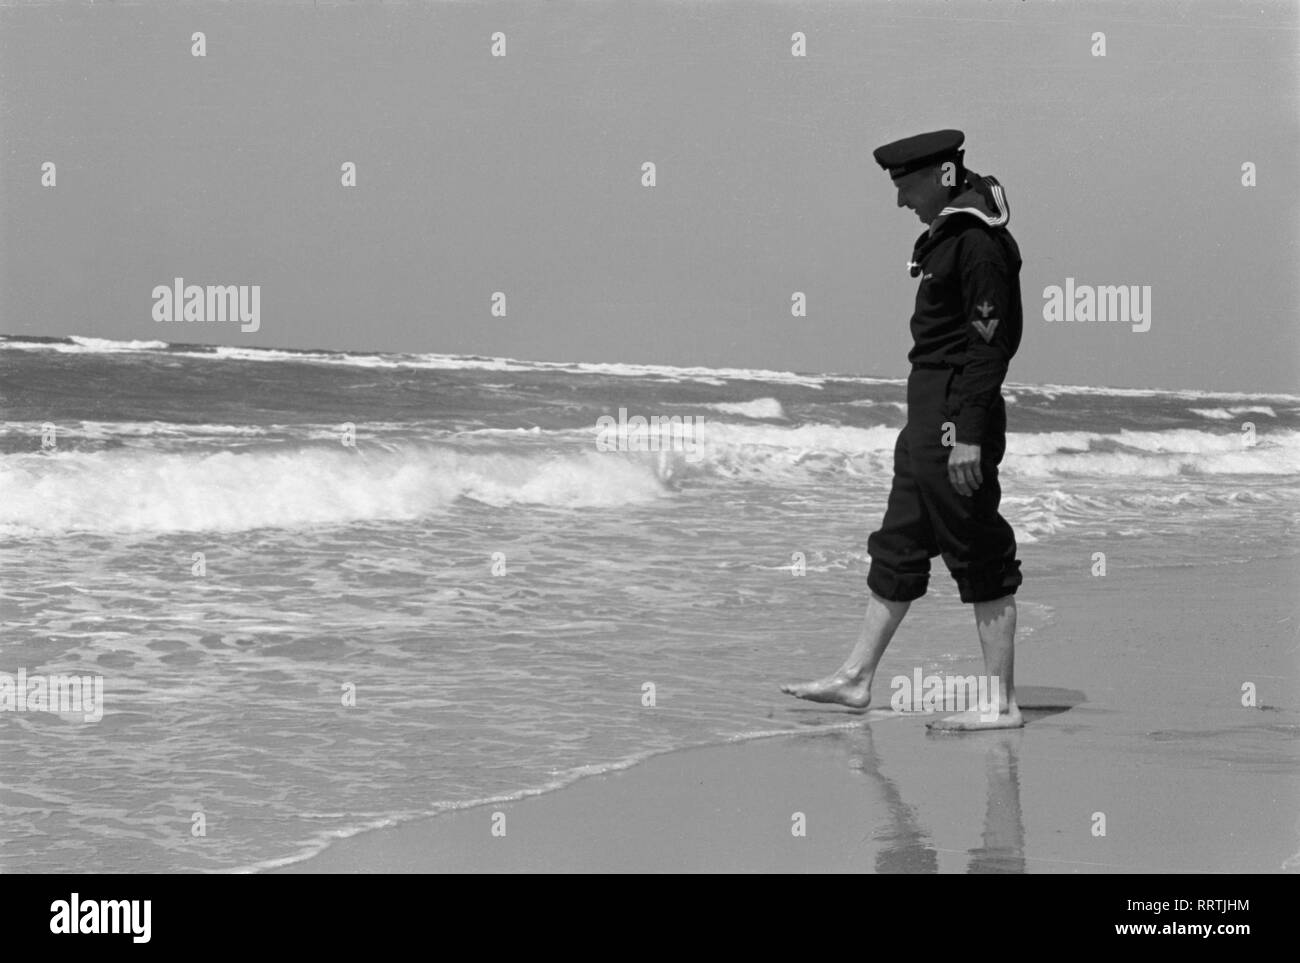 Spiaggia - Strand, Meer, vedere, in Wellen, Belgium.Wellen, sabbia, Mann, Seemann, Matrose, uniforme, barfuss, Schaumkronen, Gischt, marino, Reichsmarine, 1940er, 1940s Foto Stock